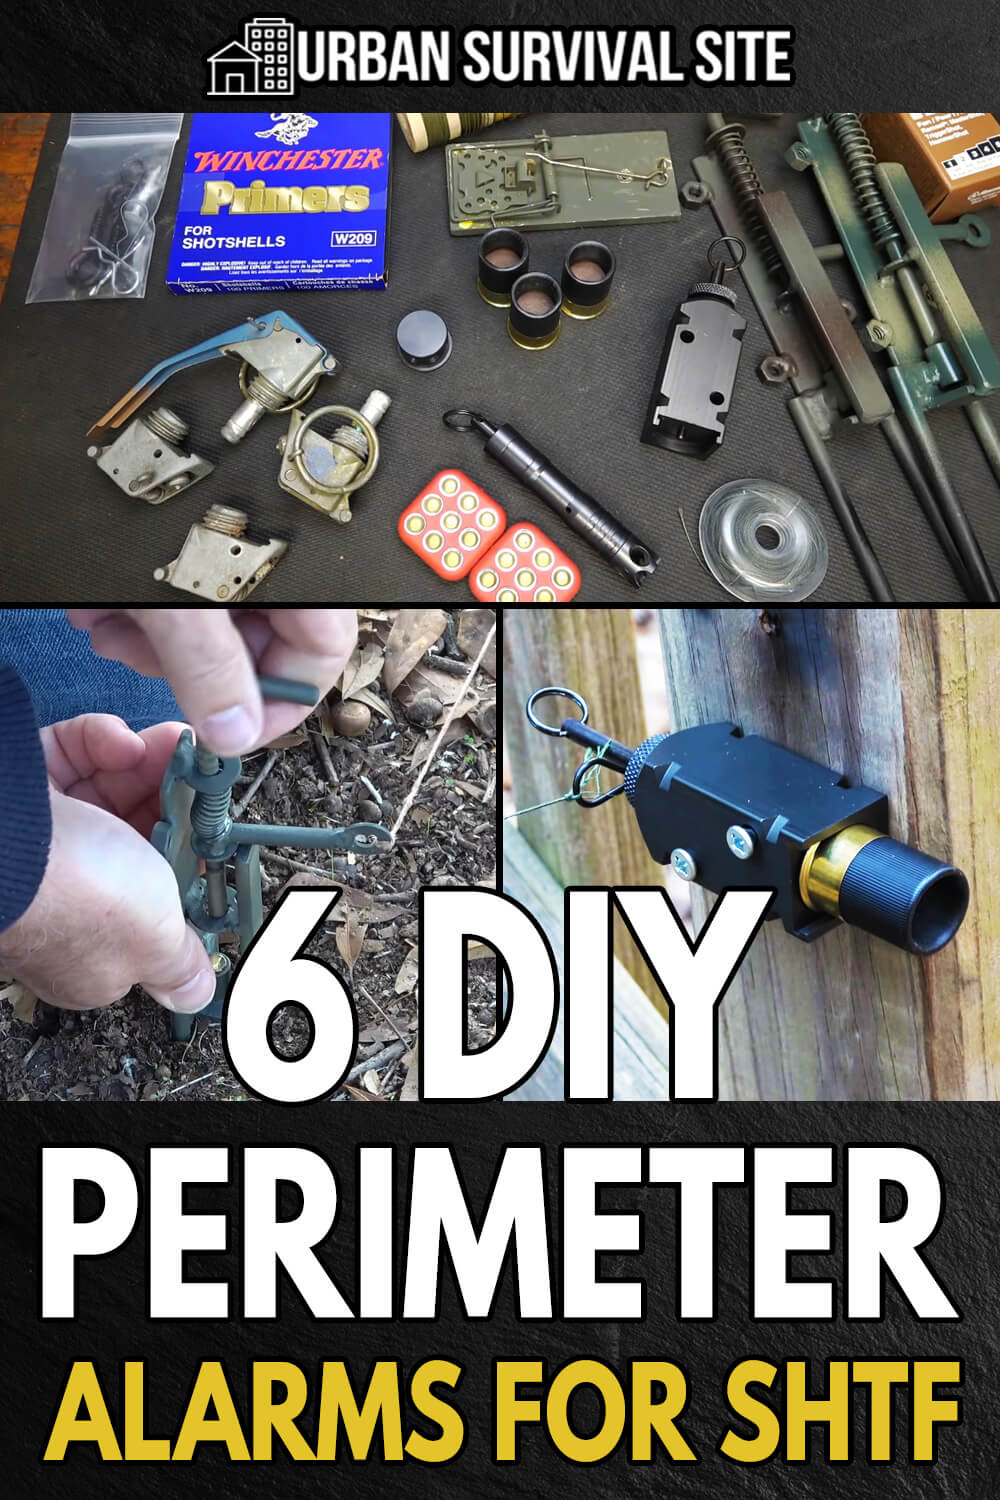 6 DIY Perimeter Alarms for SHTF